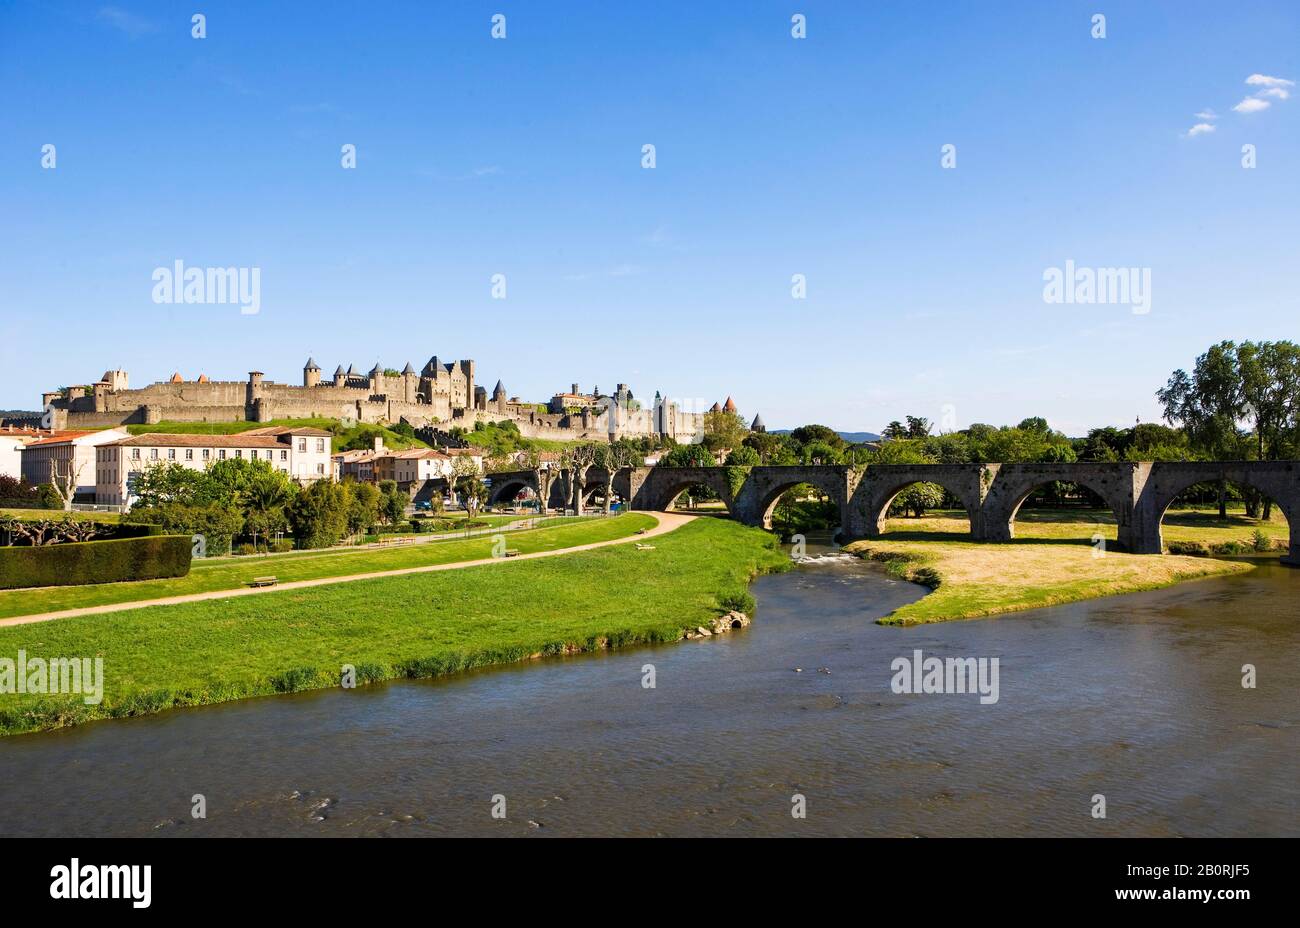 Fiume Aude, patrimonio dell'umanità dell'UNESCO, città fortificata medievale, Carcassonne, dipartimento Aude, Languedoc-Rousillon, Francia Foto Stock